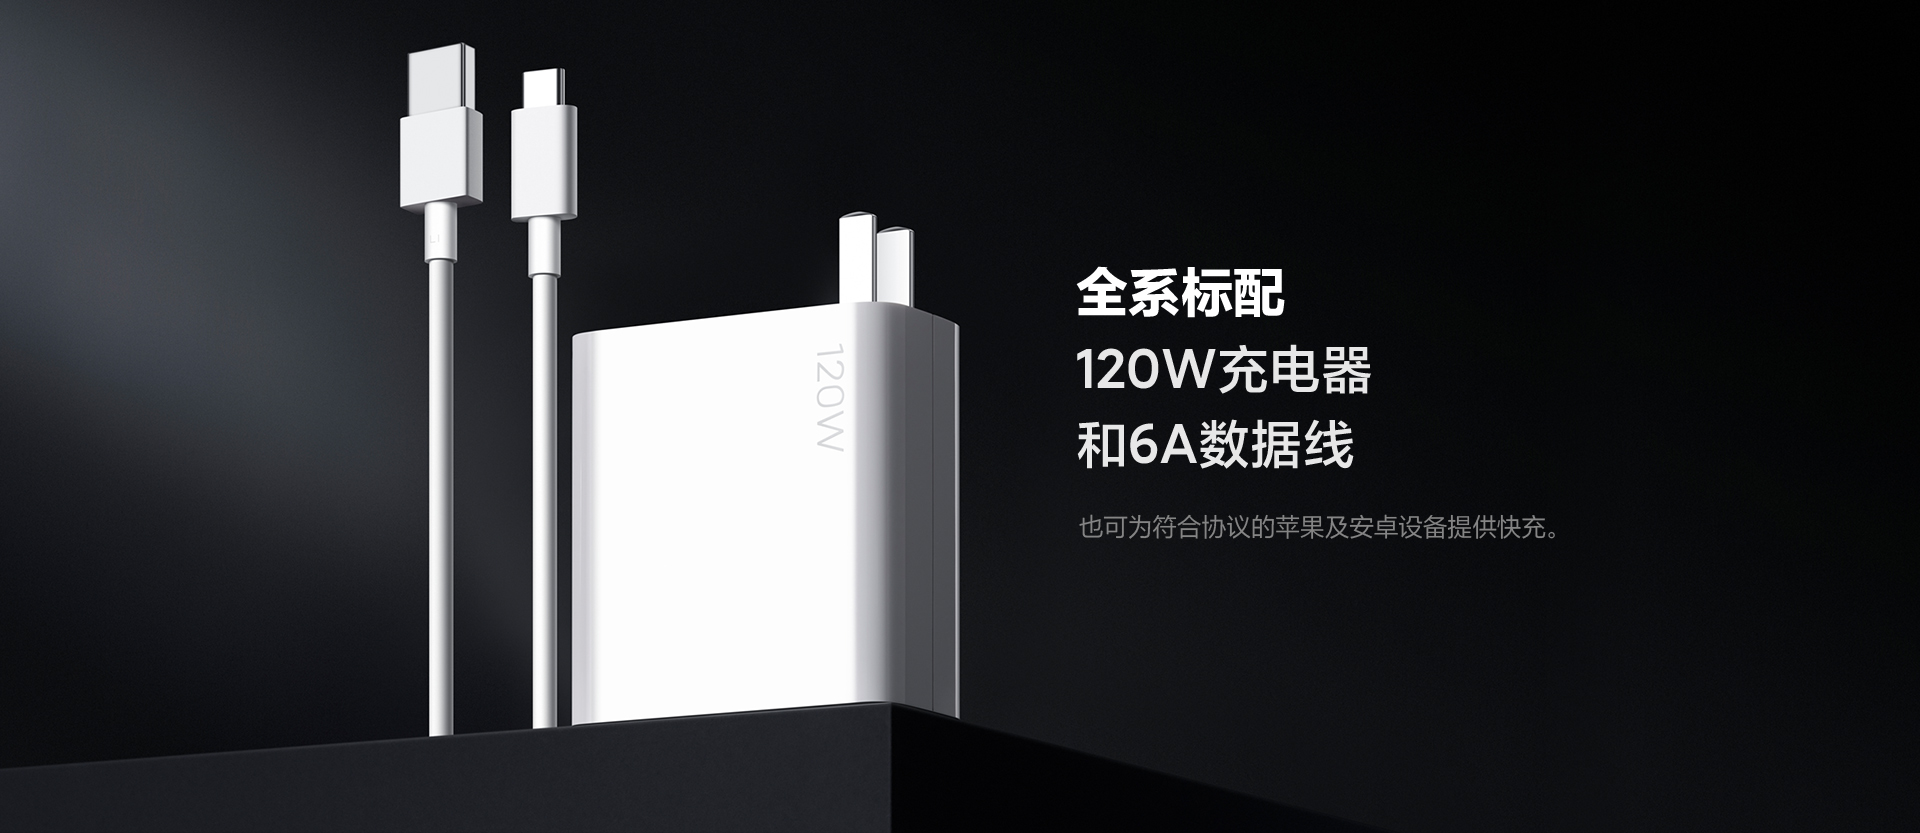 Củ sạc 120W của Xiaomi Black Shark 4S Pro